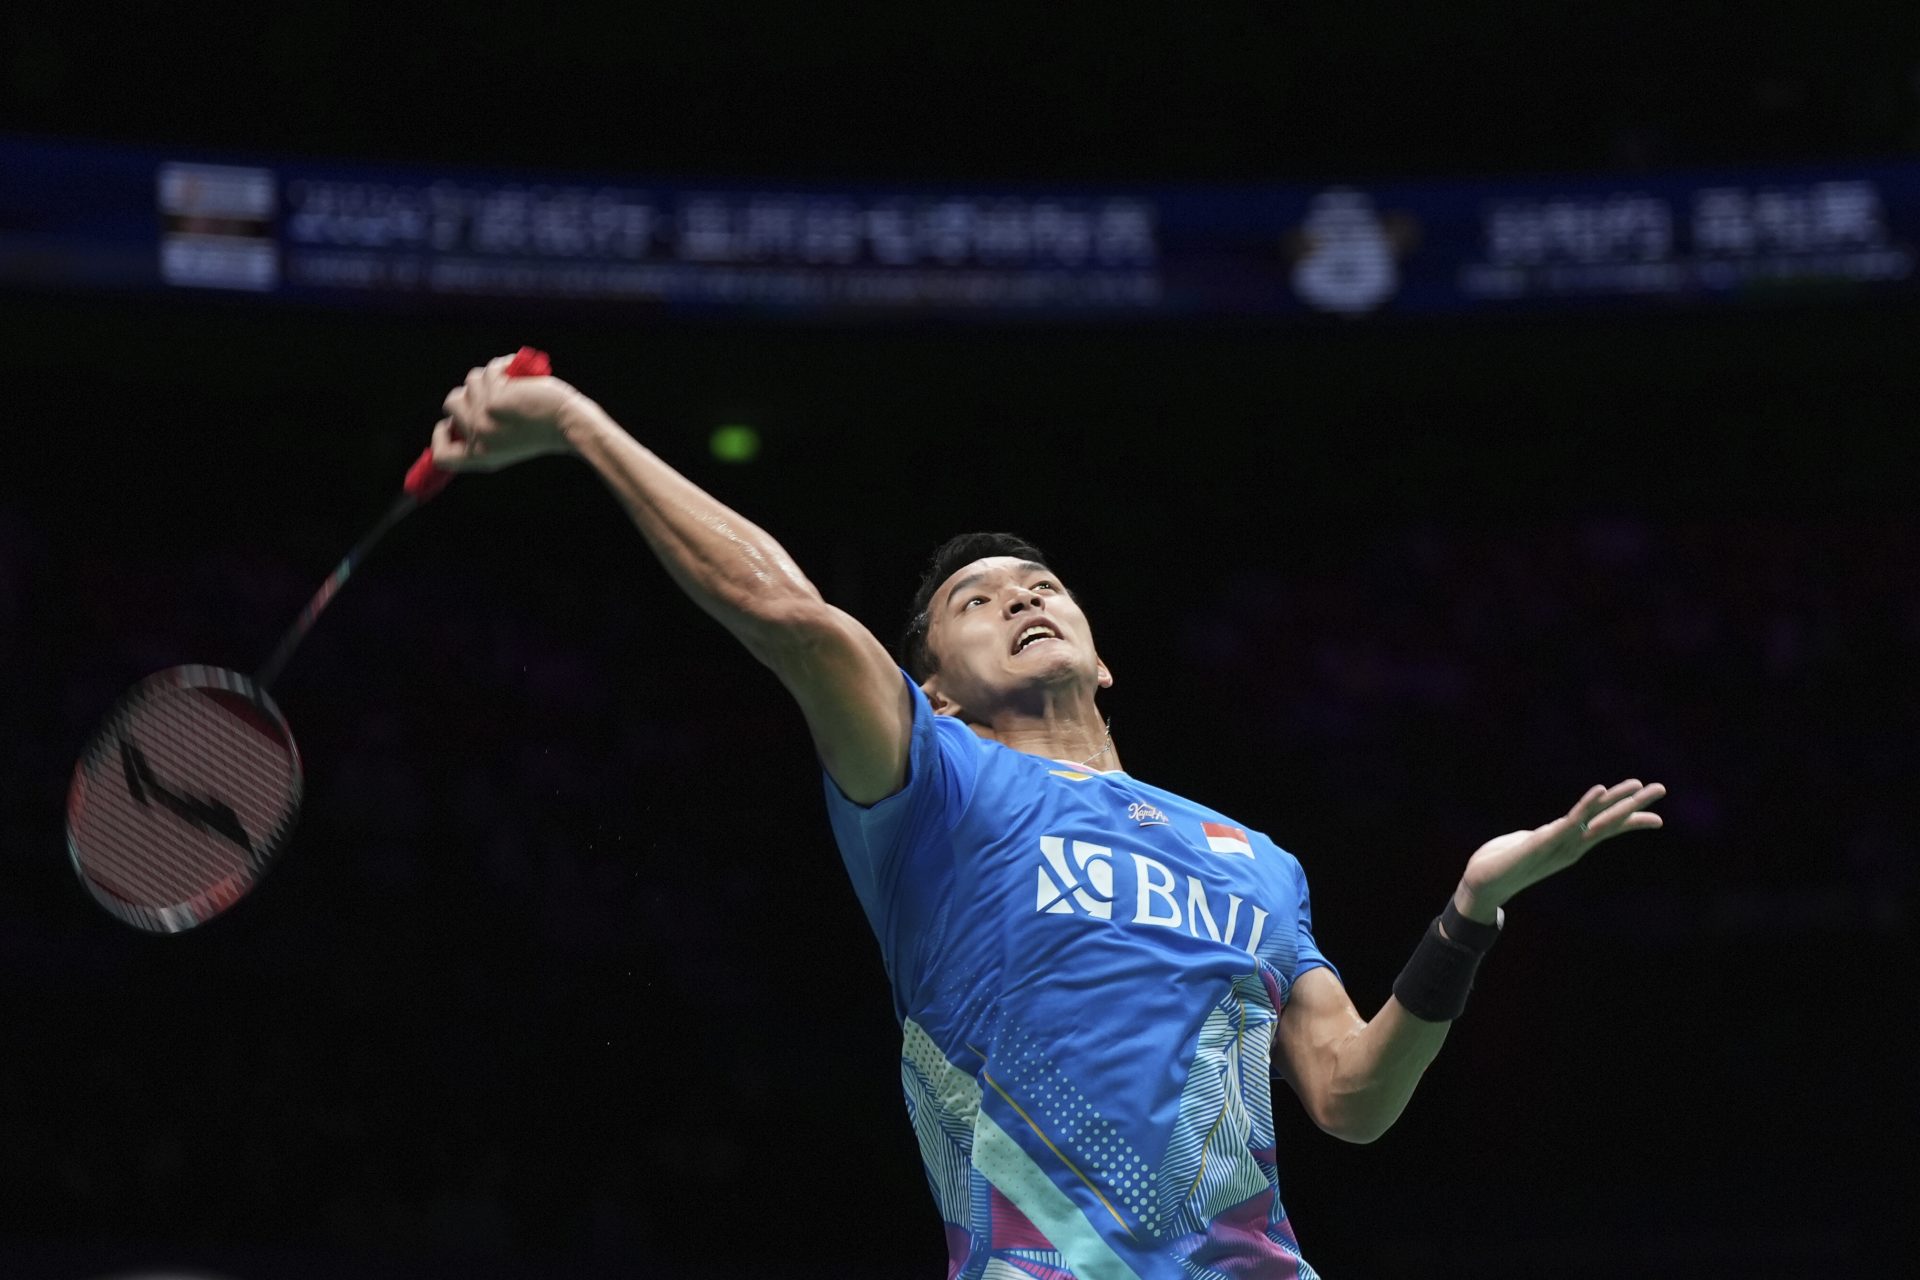 Christie d'Indonésie remporte le titre asiatique de badminton avant Paris